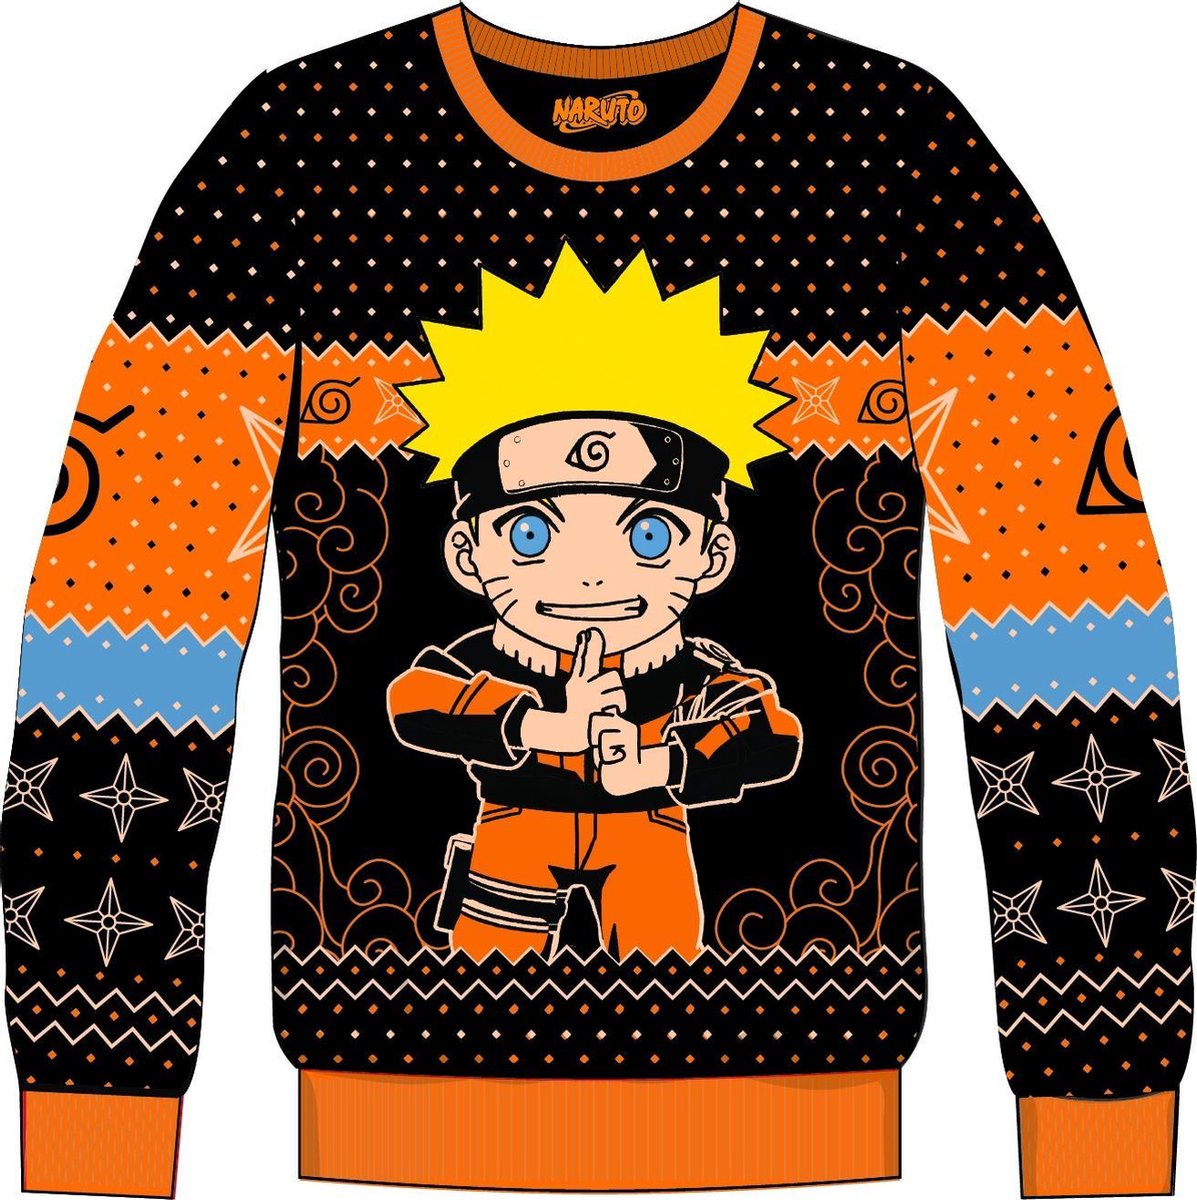 Naruto - Christmas Sweater - Kage Bunshin No Jutsu - 8 years